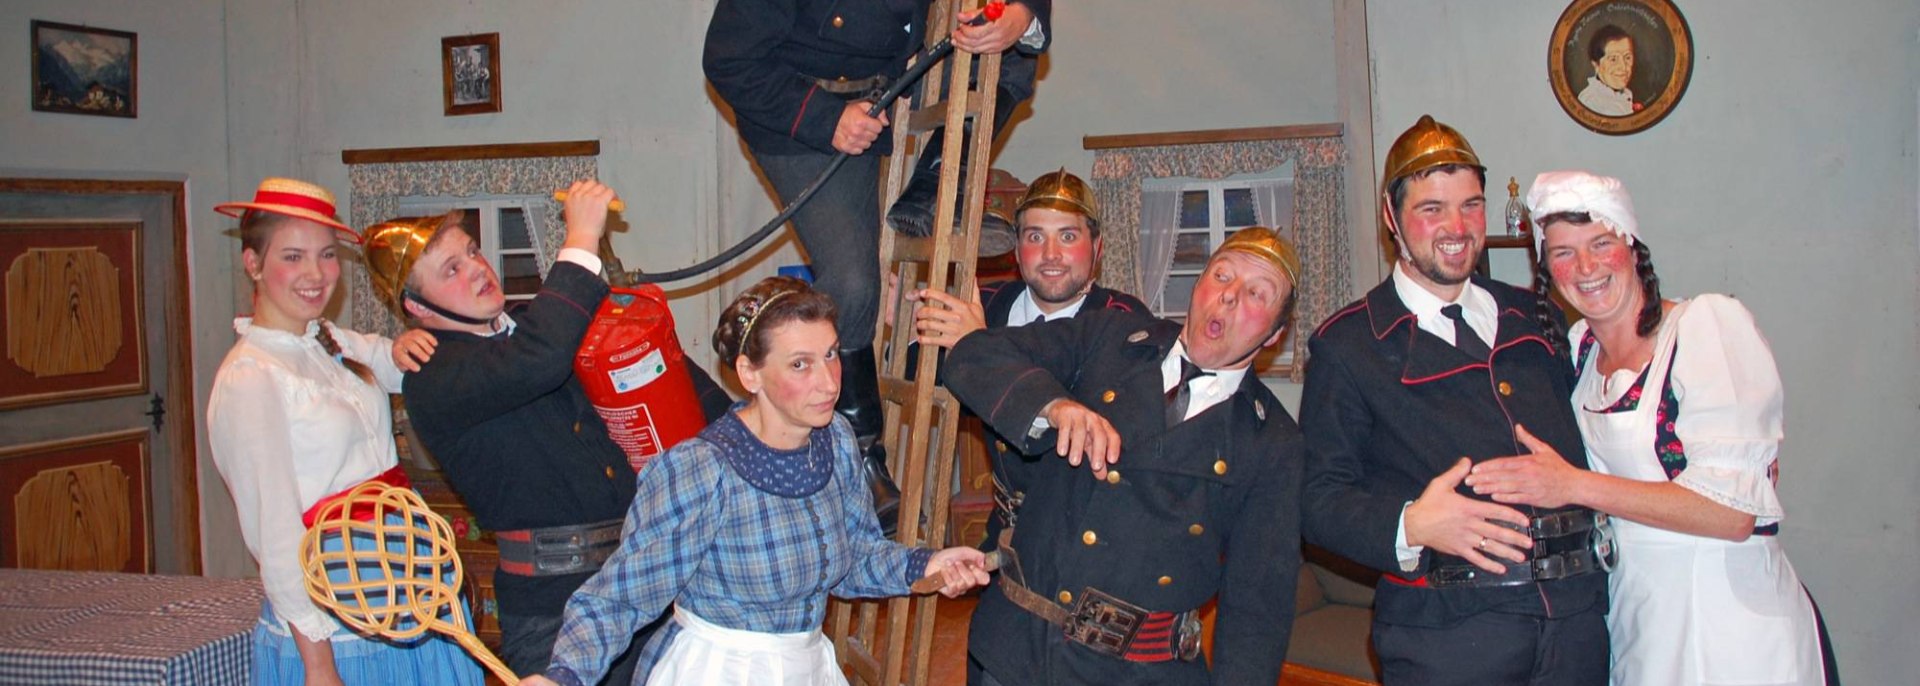 Mitwirkende des Mittenwalder Bauerntheaters beim Stück "Die Feuerwehrsitzung", © Mittenwalder Bauerntheater e.V. | Hans Schmid